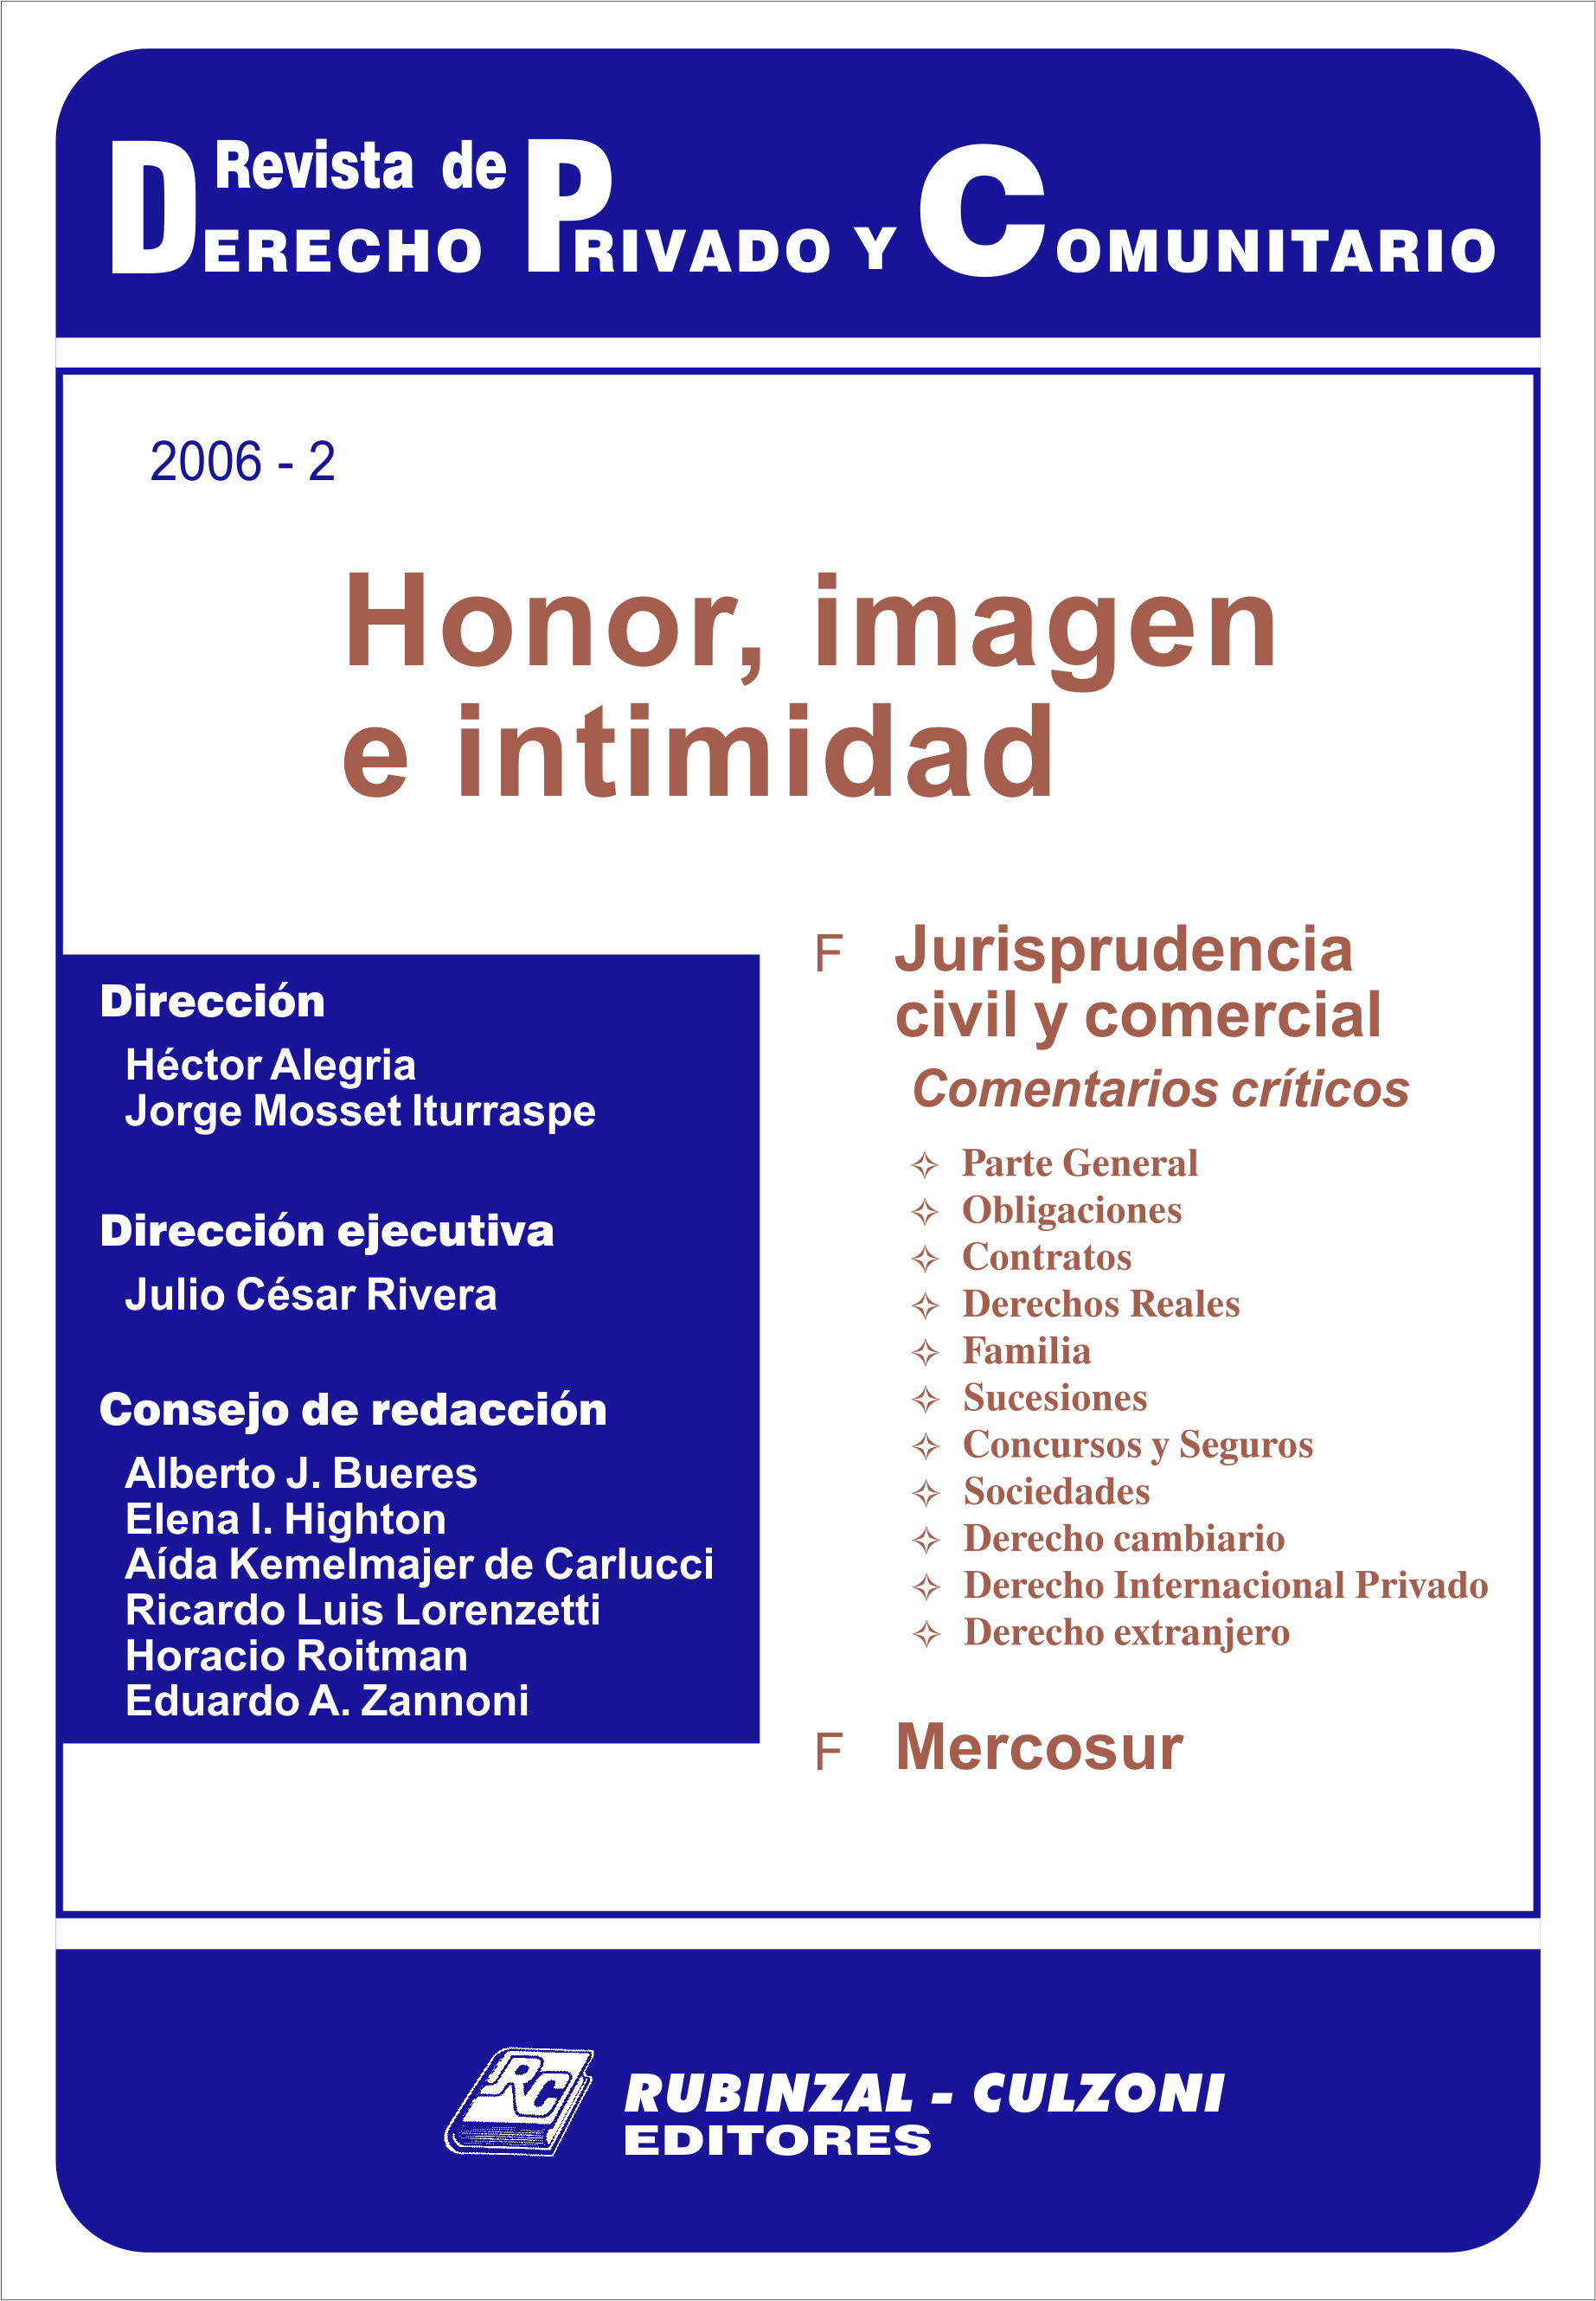 Revista de Derecho Privado y Comunitario - Honor